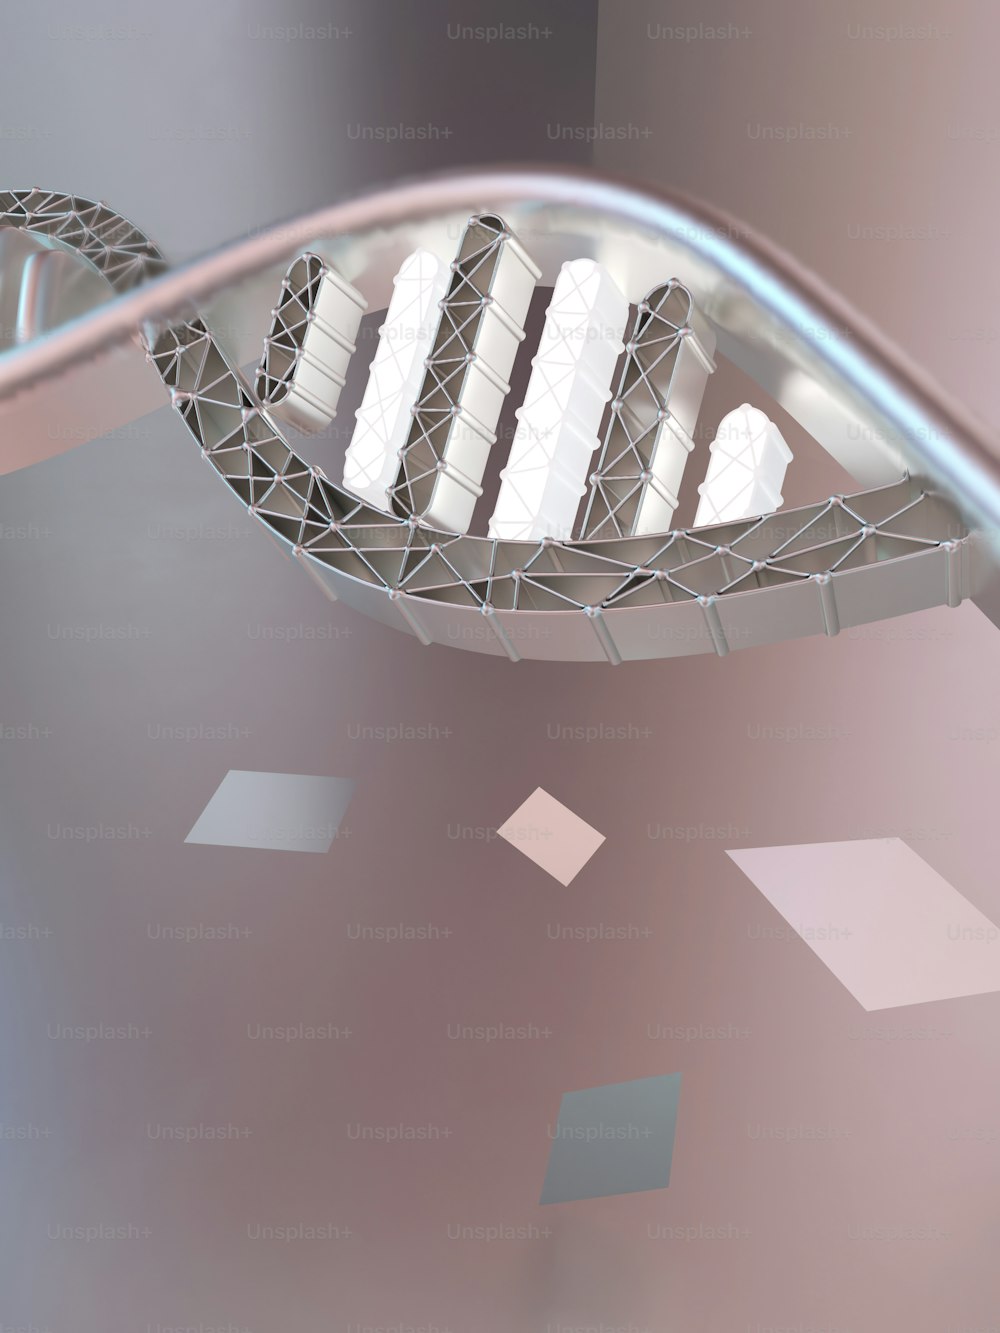 Ein 3D-Bild einer Struktur mit einem spiralförmigen Design